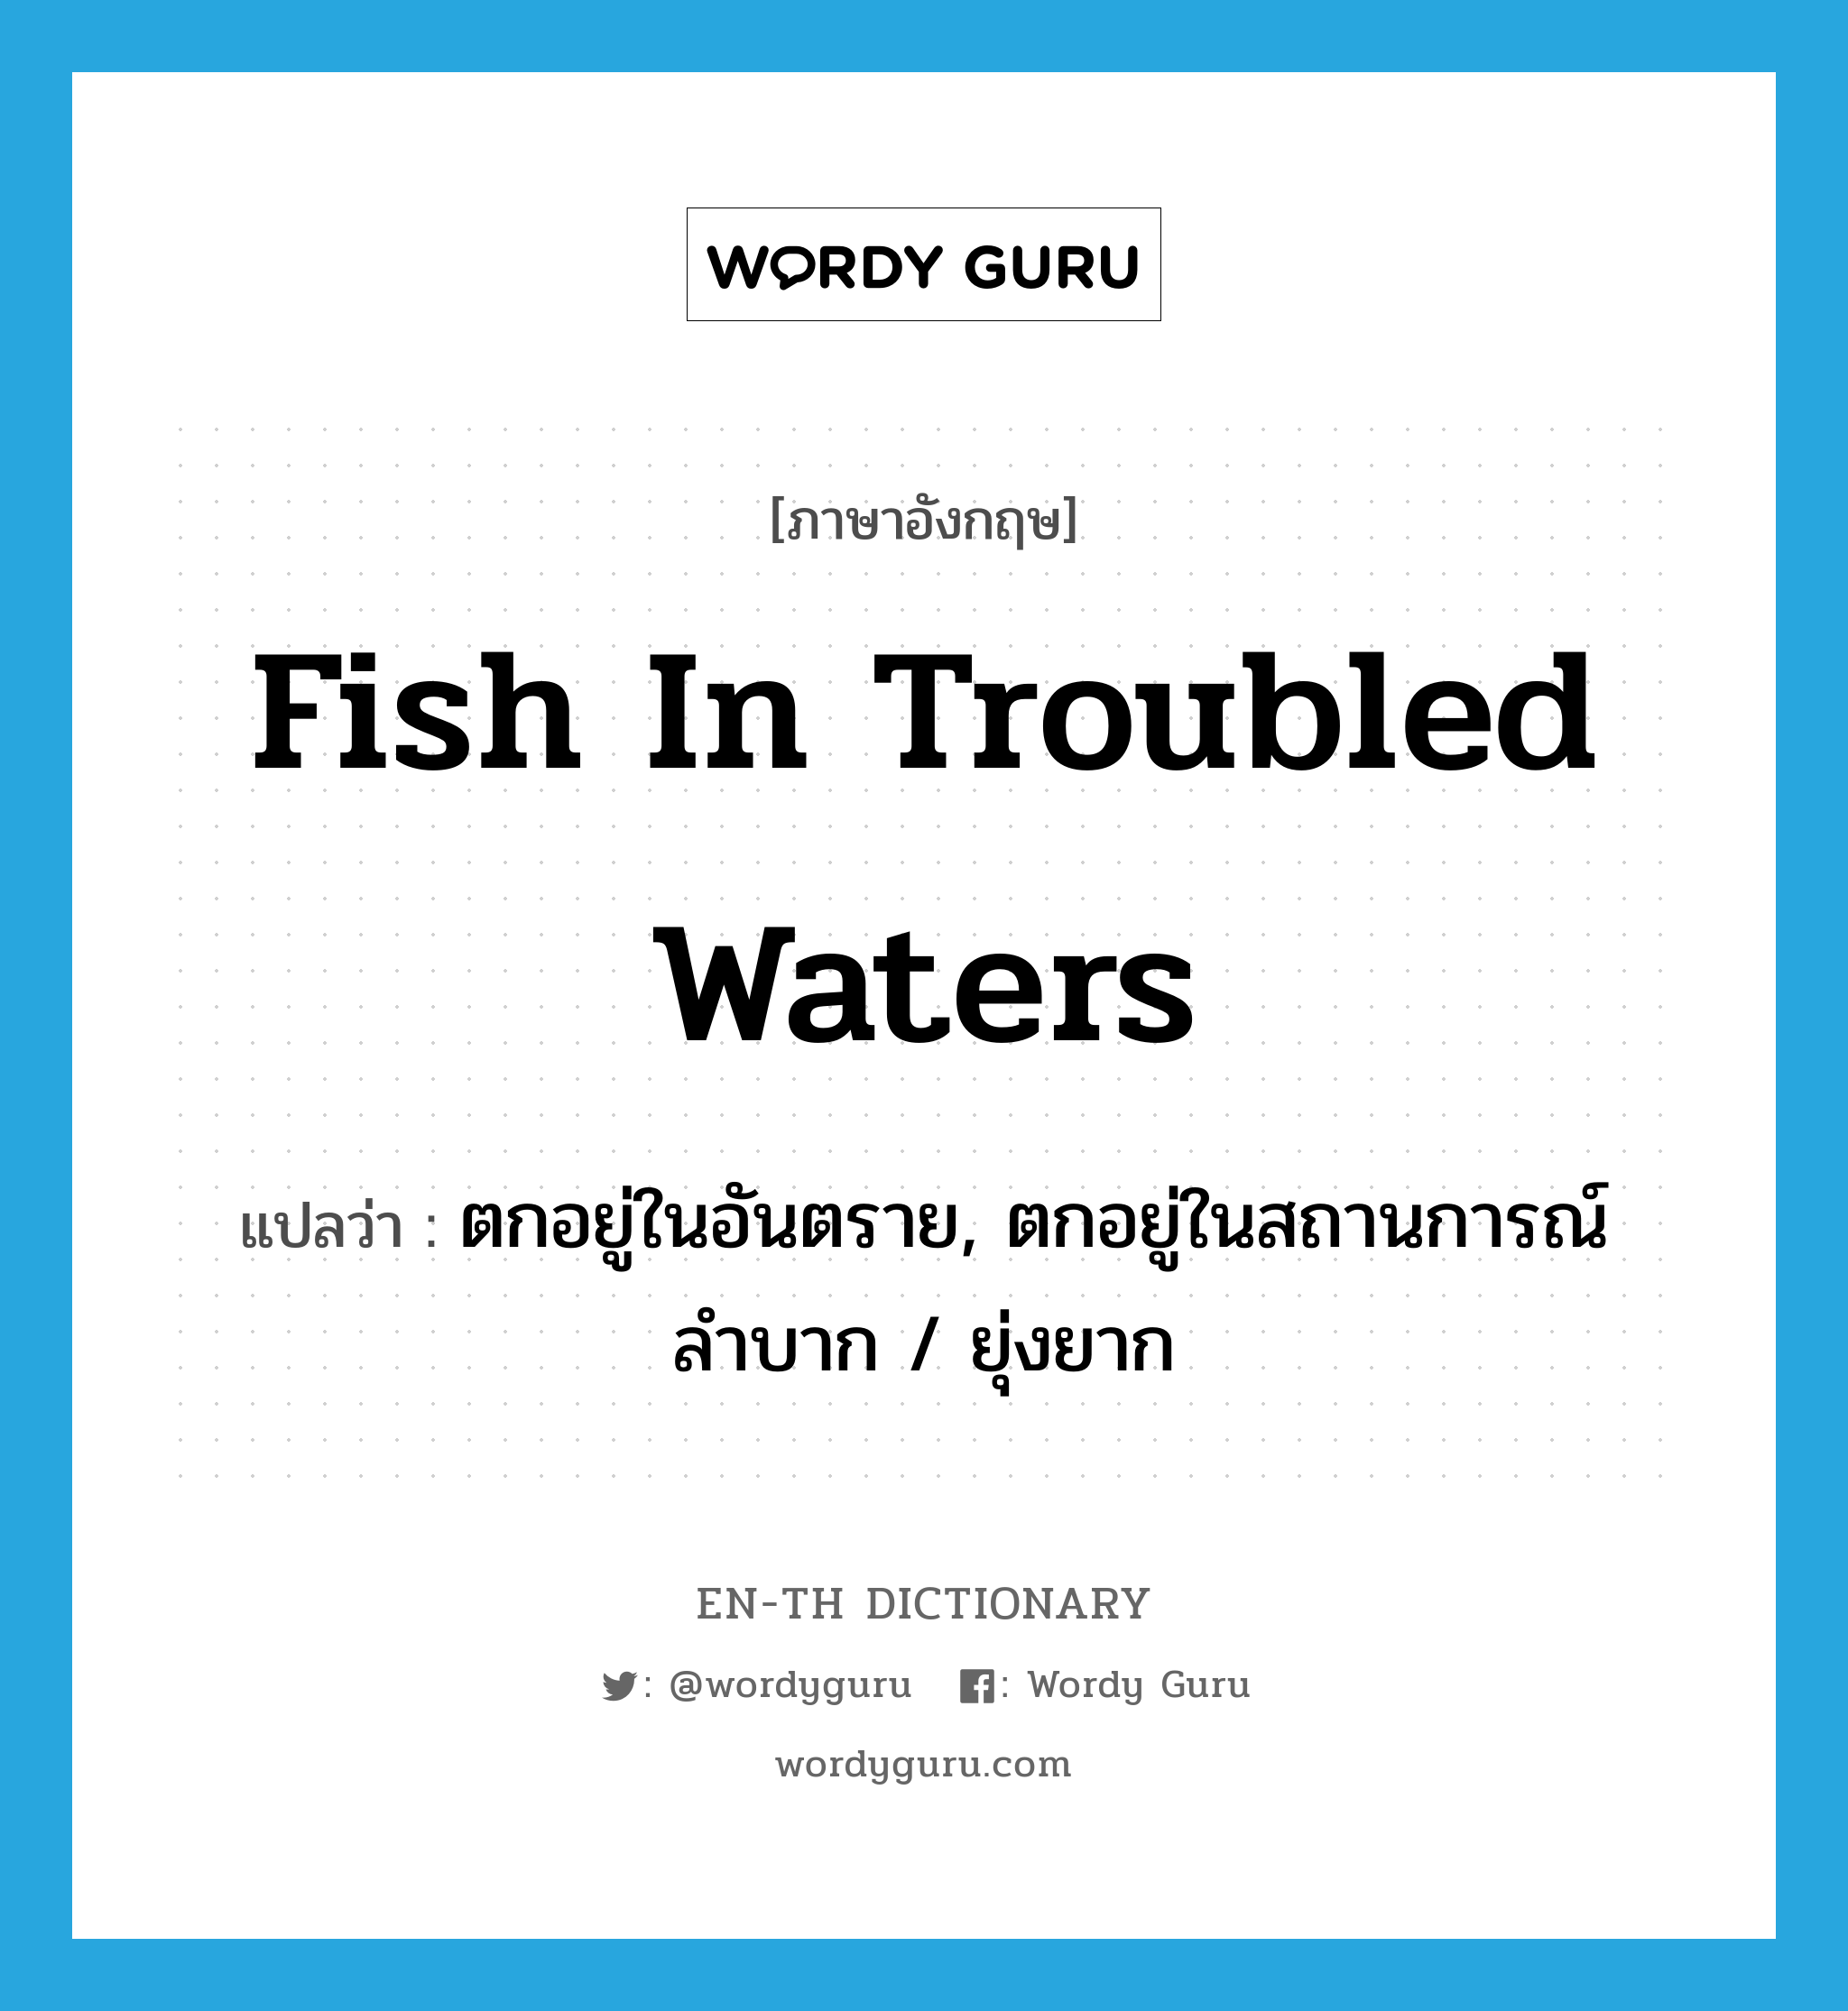 ตกอยู่ในอันตราย, ตกอยู่ในสถานการณ์ลำบาก / ยุ่งยาก ภาษาอังกฤษ?, คำศัพท์ภาษาอังกฤษ ตกอยู่ในอันตราย, ตกอยู่ในสถานการณ์ลำบาก / ยุ่งยาก แปลว่า fish in troubled waters ประเภท IDM หมวด IDM